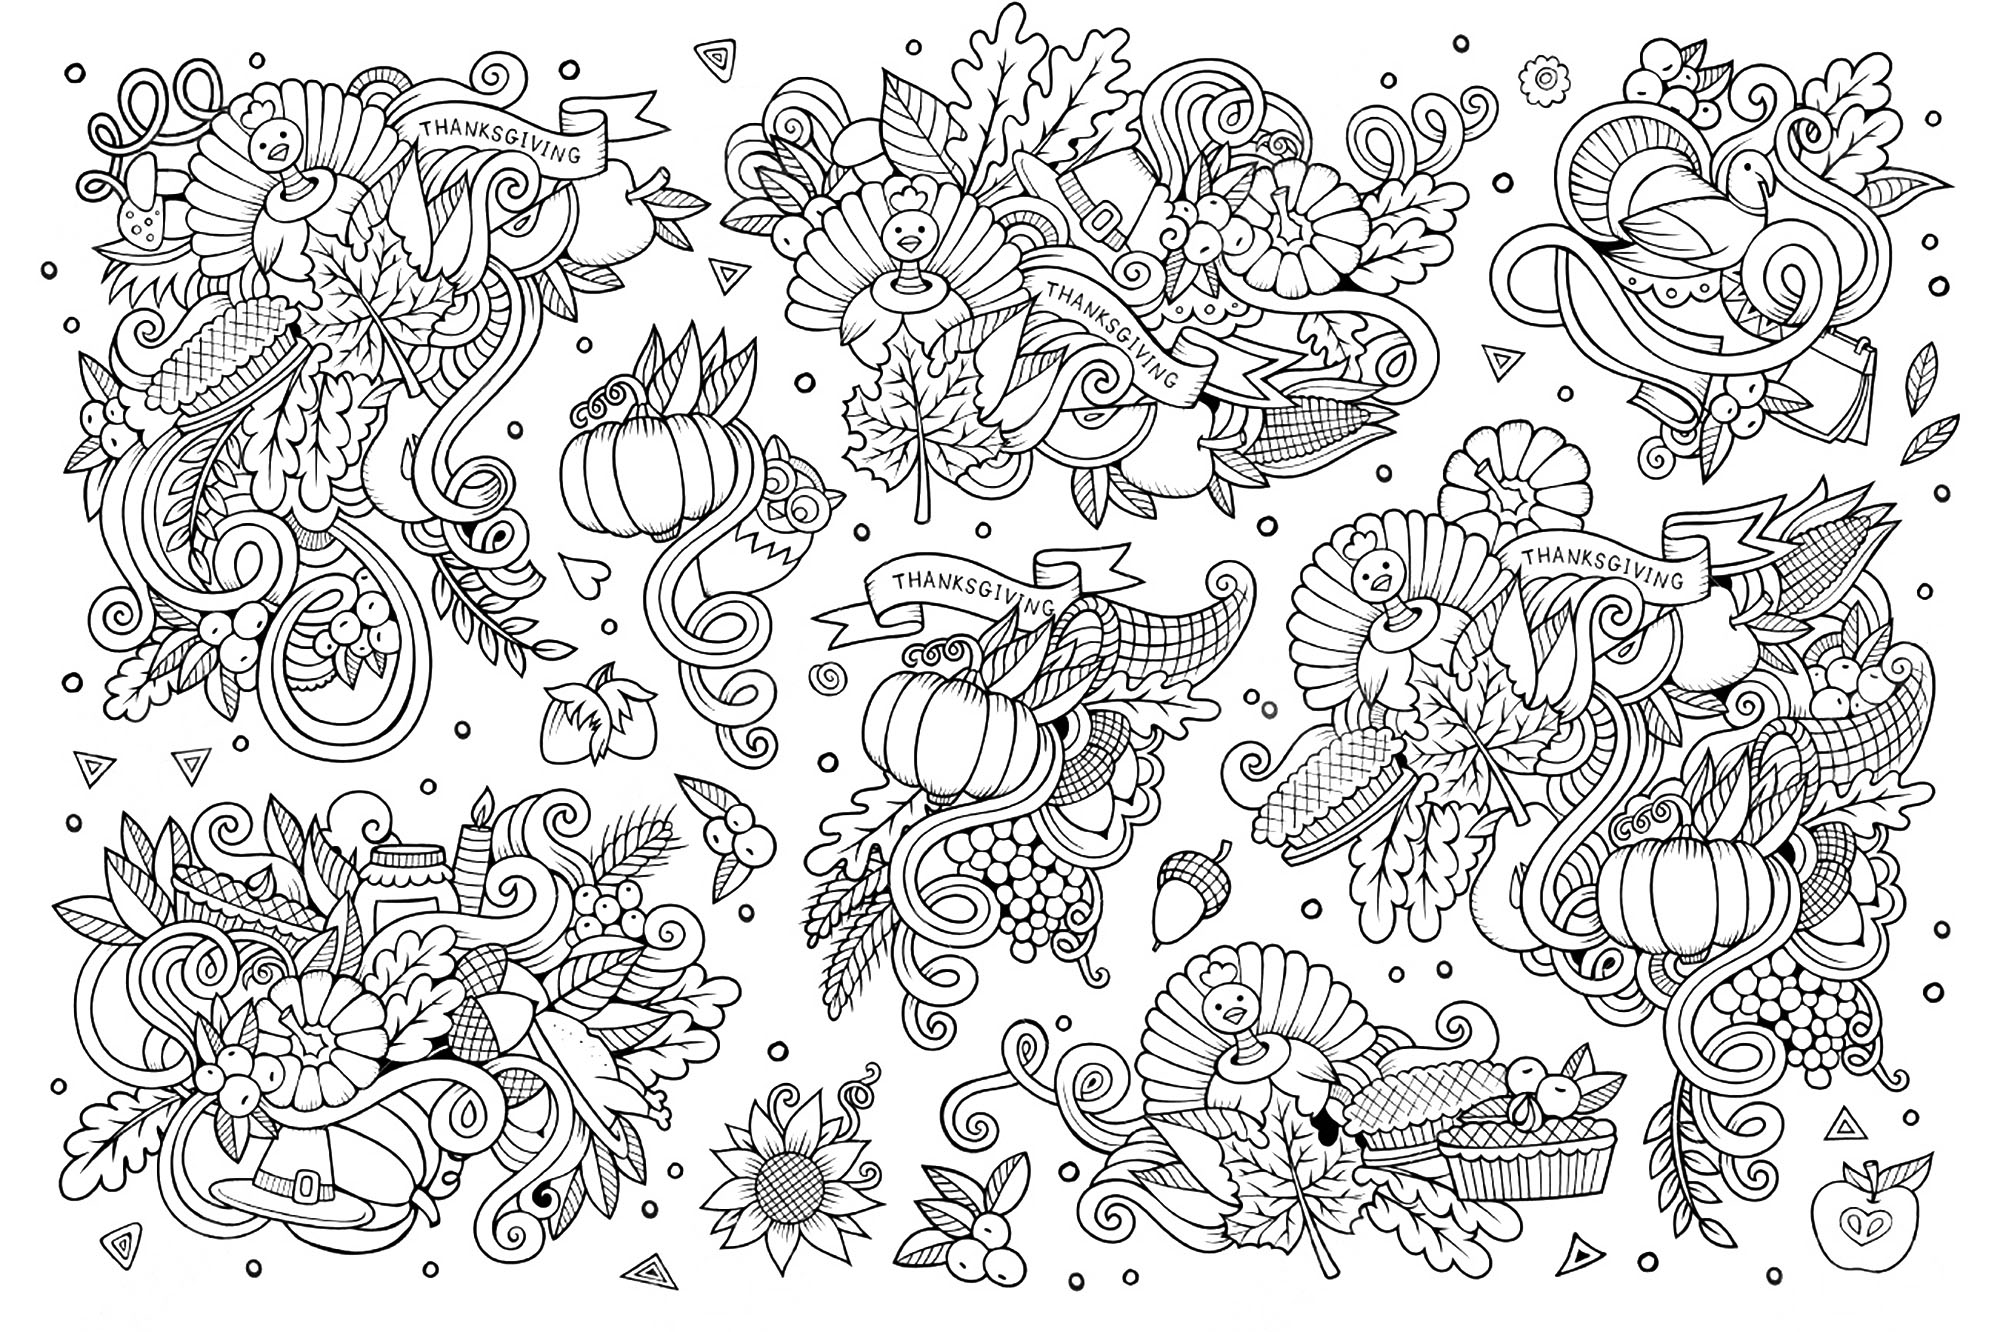 Dessin stile Doodle del Giorno del Ringraziamento. Molti motivi legati alla festa del Ringraziamento, Artista : Olga Kostenko   Fonte : 123rf